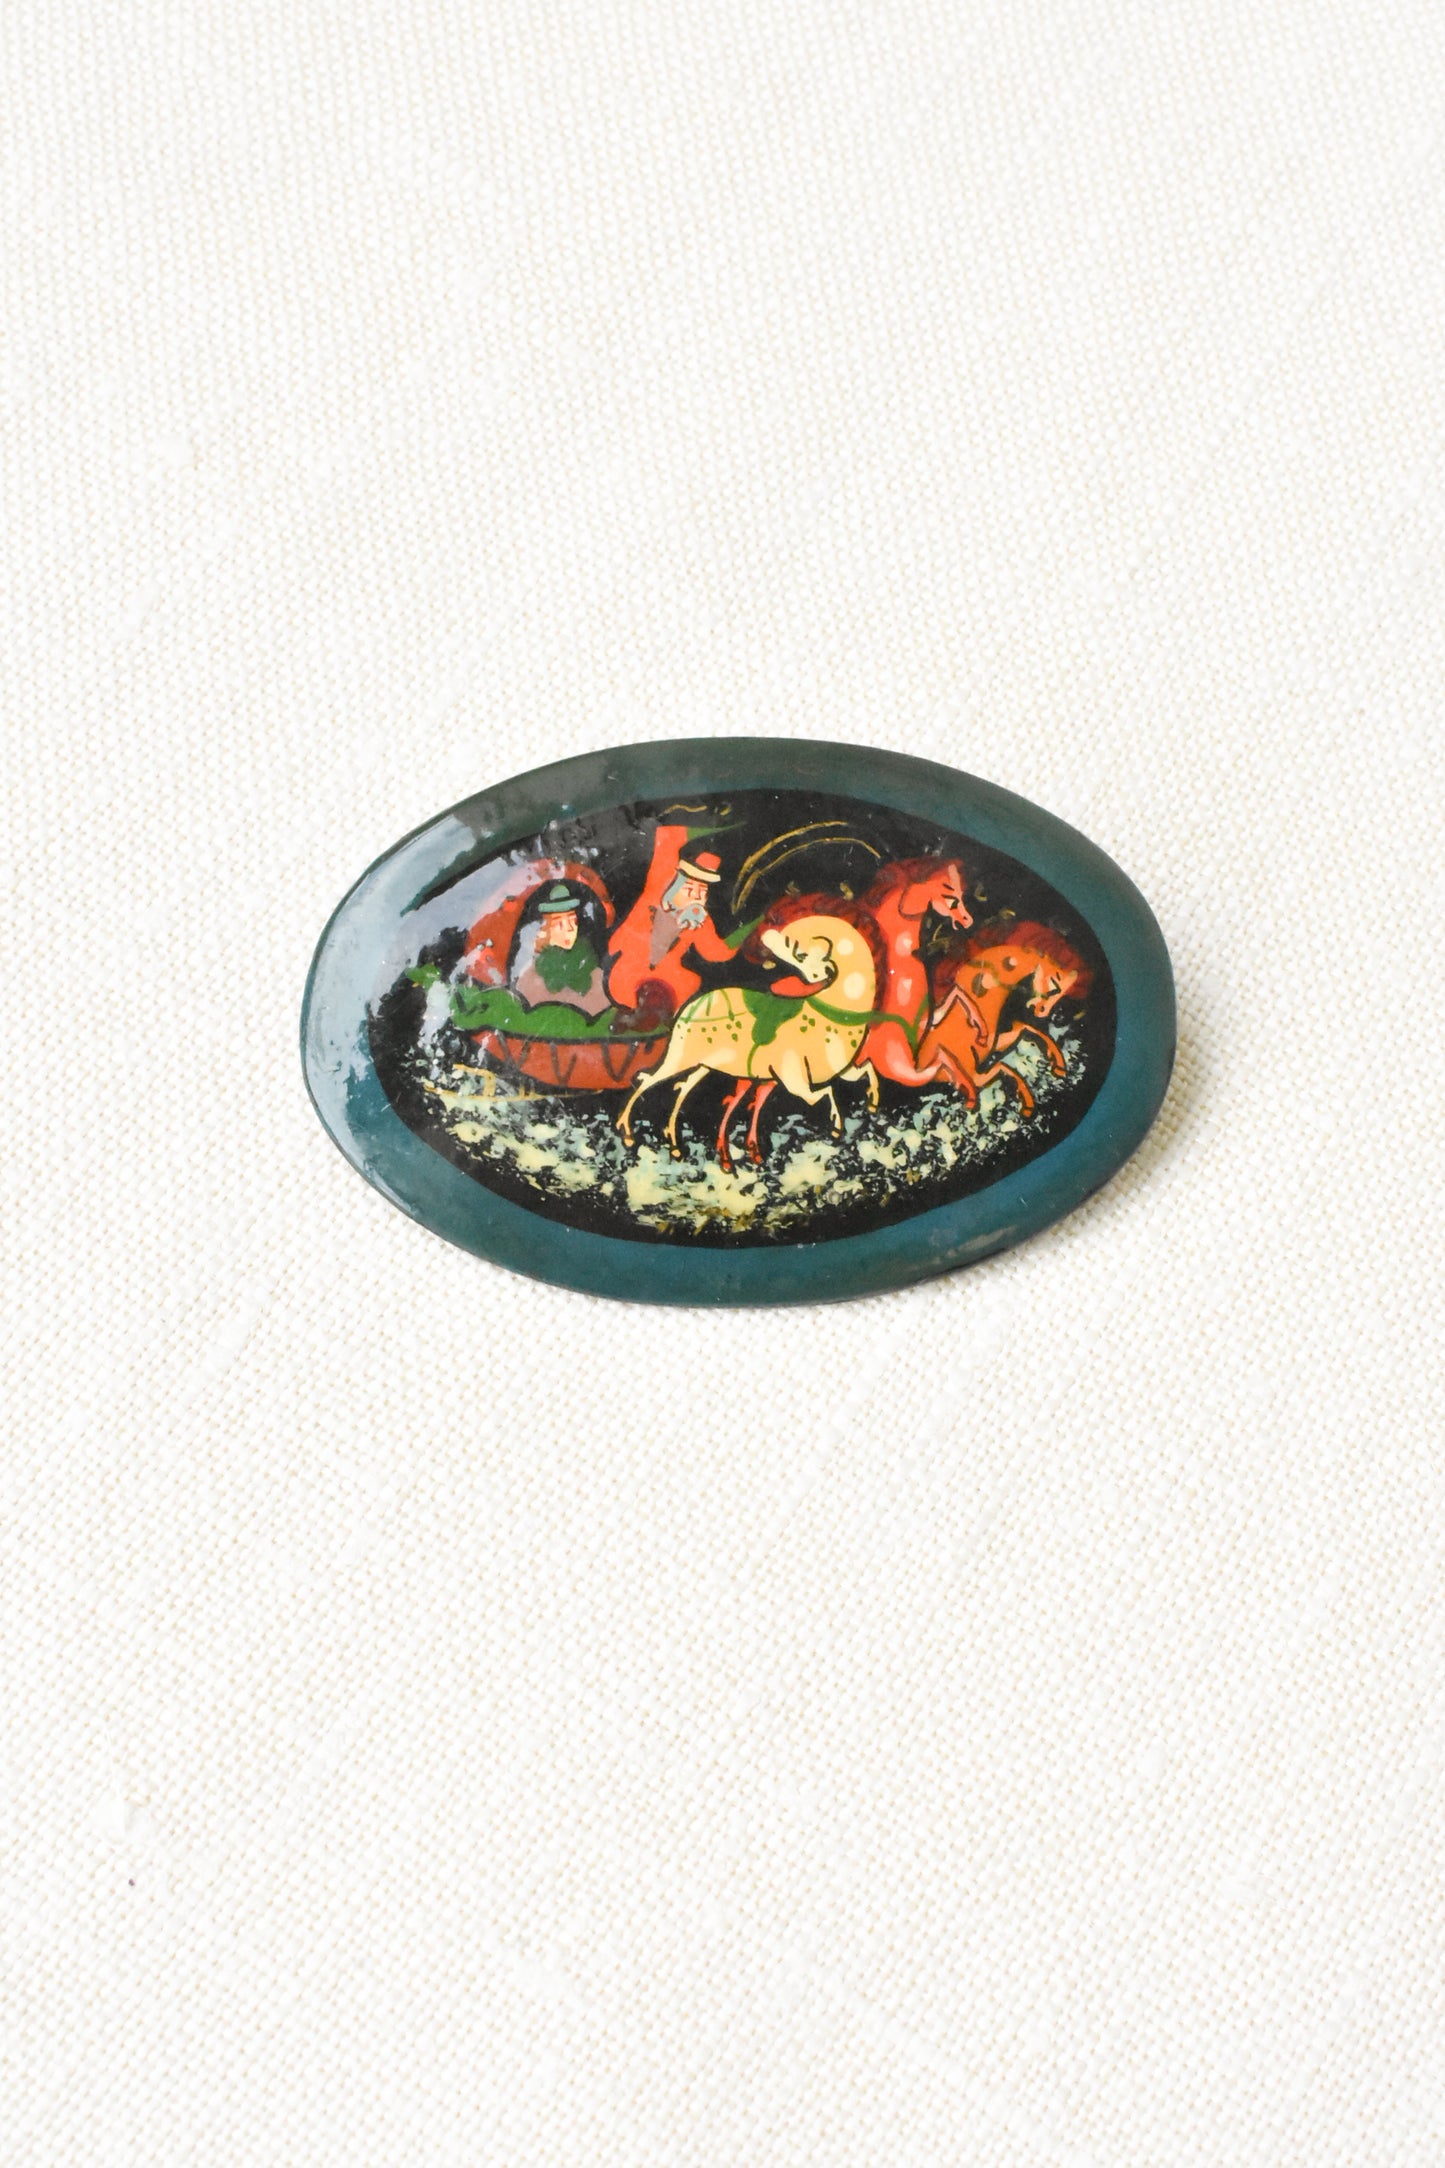 Hand-painted folk art brooch